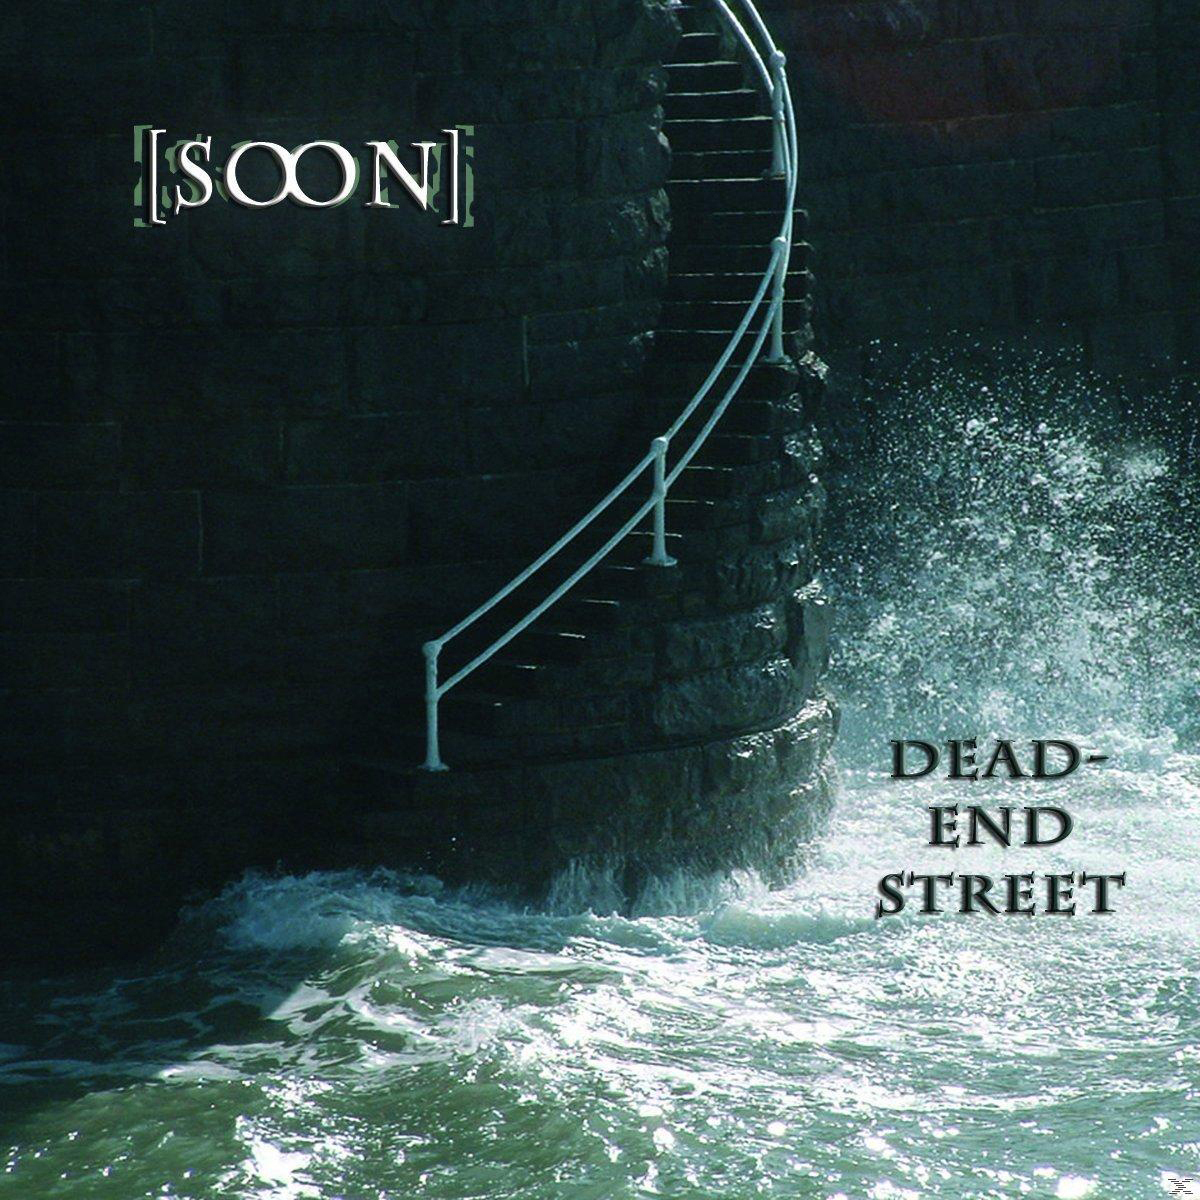 soon] - Dead-End Street (CD) 